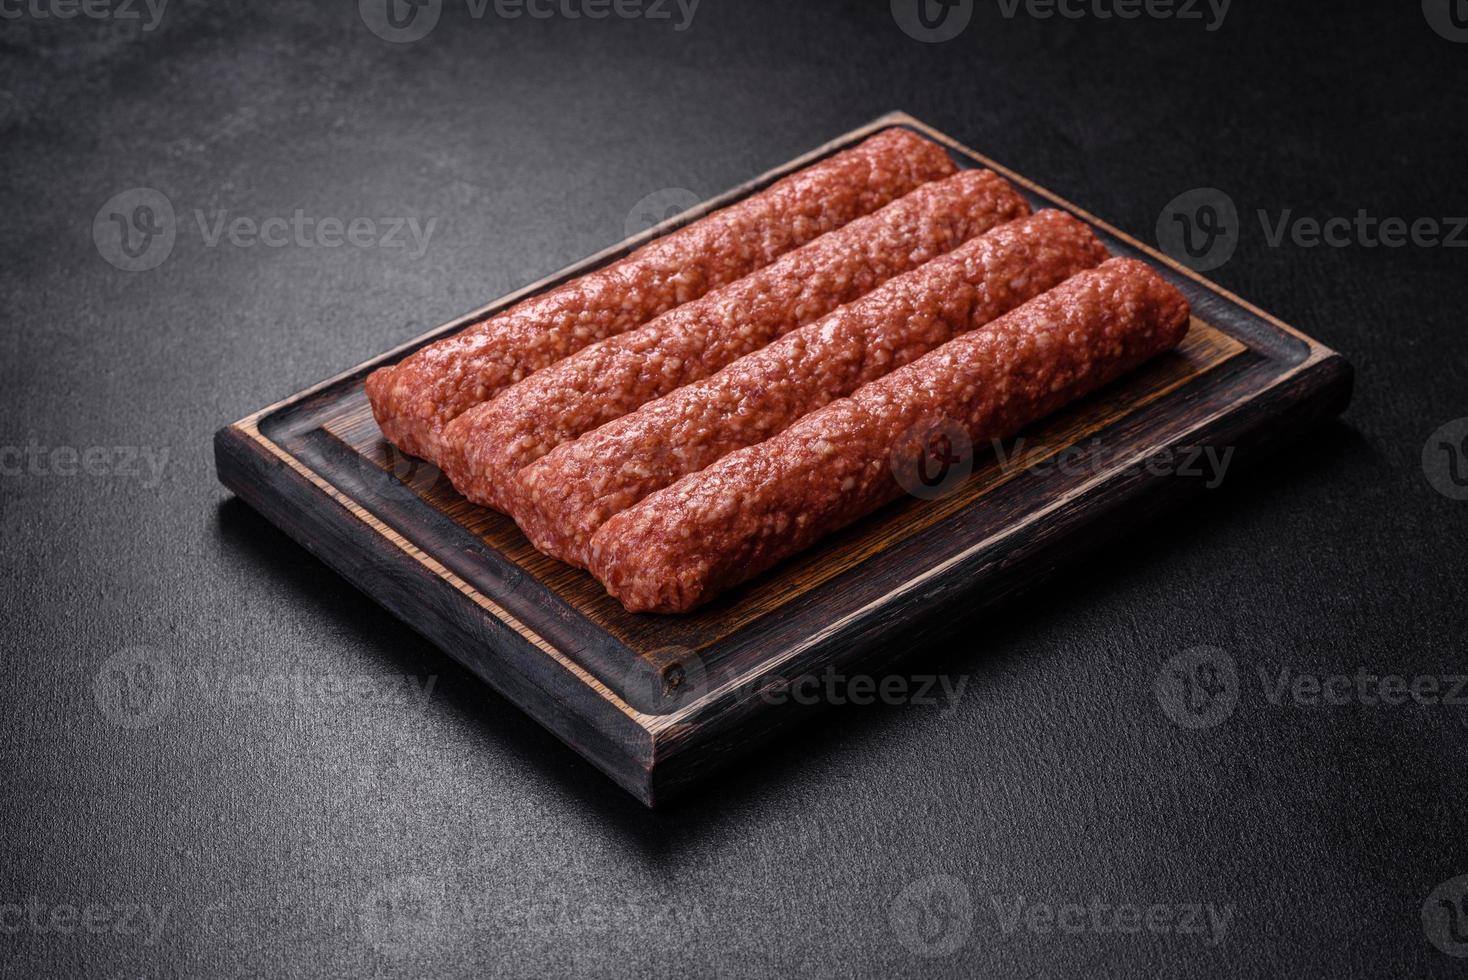 vers rauw gehakt voor gegrilde kebab met specerijen en kruiden op een donkere betonnen ondergrond foto